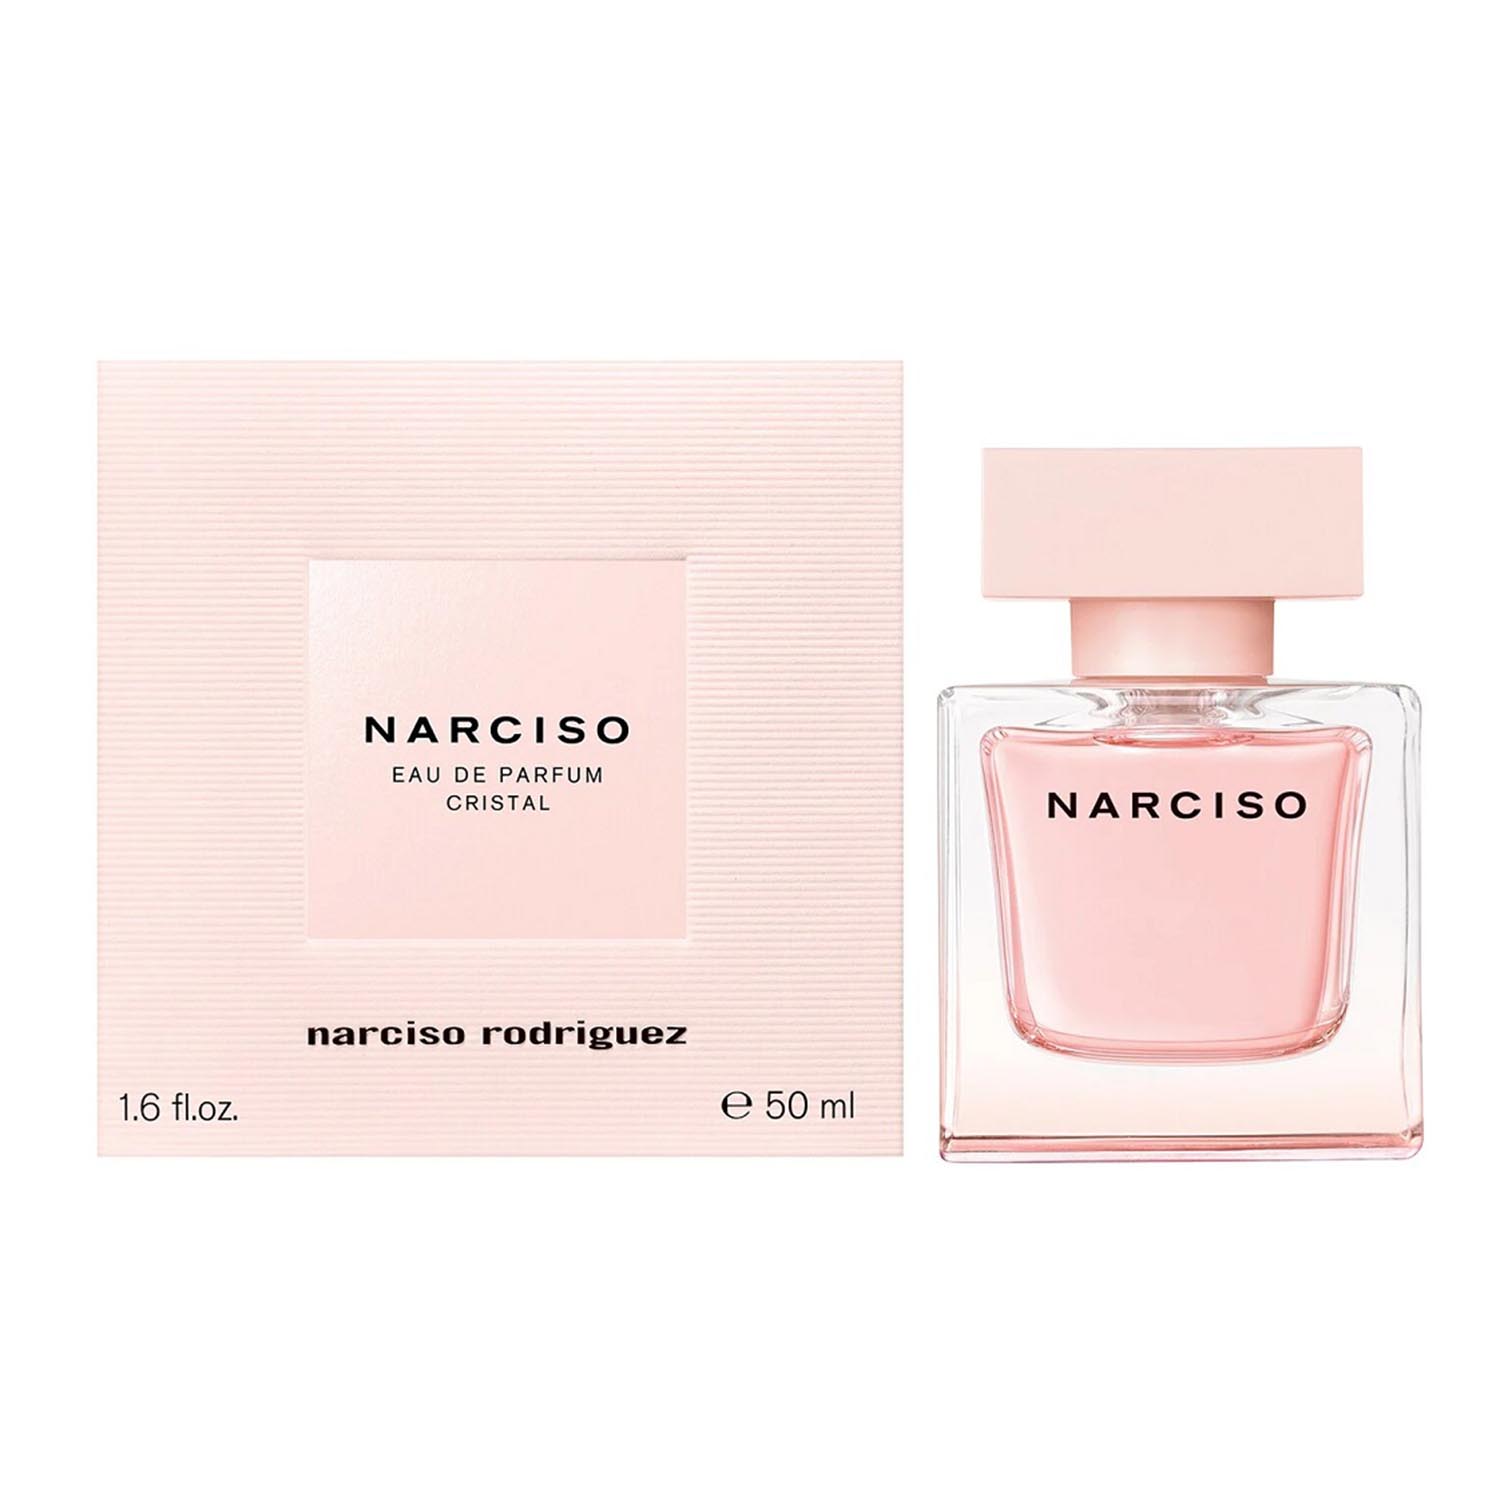 Narciso Rodriguez Narciso Eau De Parfum Cristal 50ml Spray